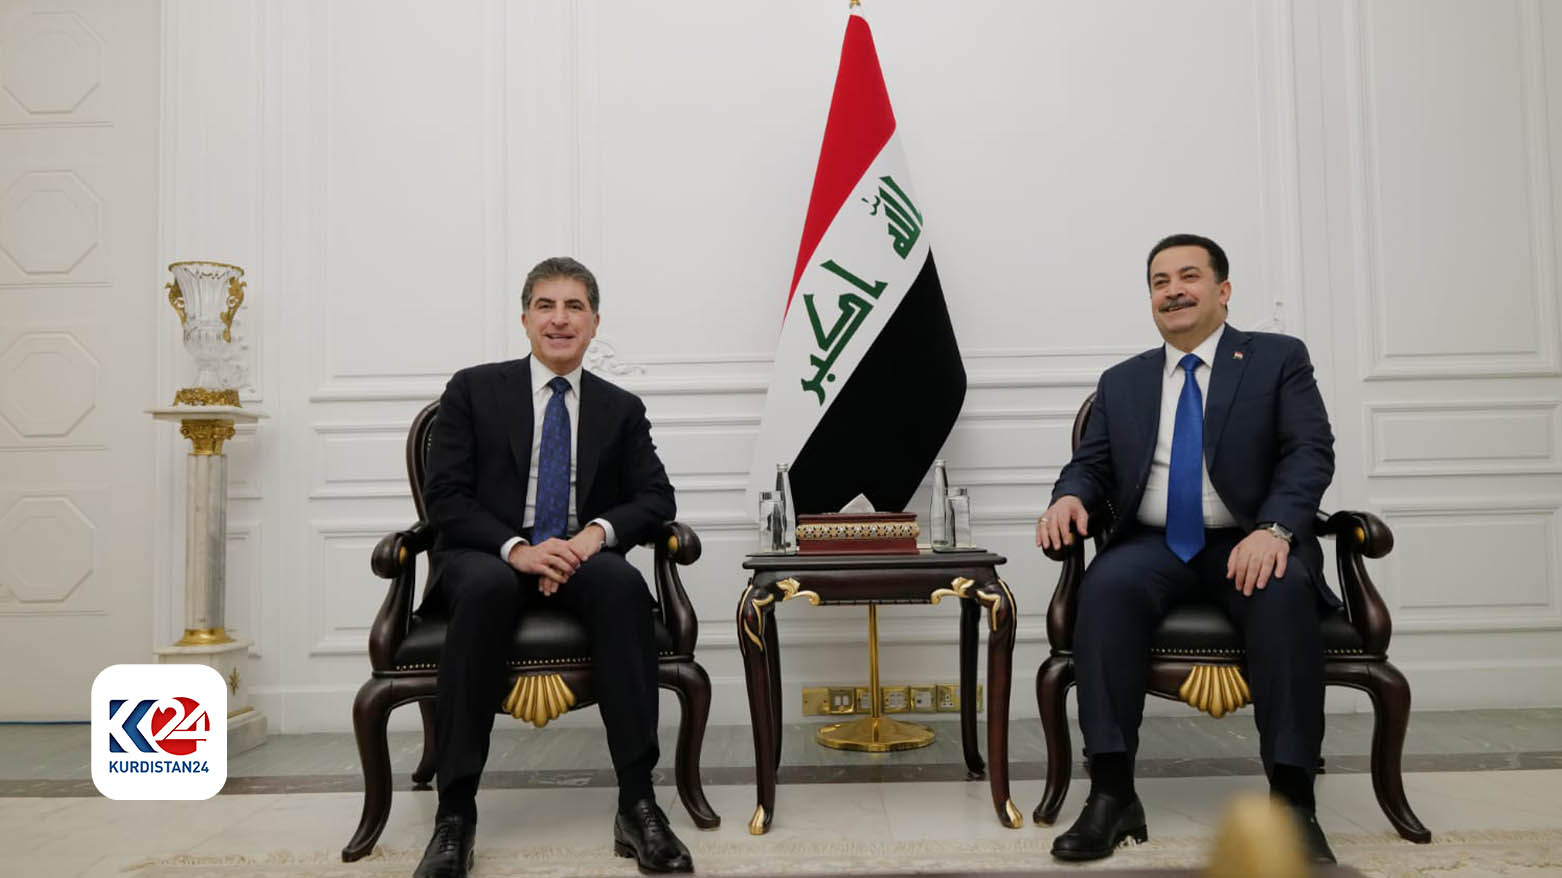 Kurdistan Region President Iraqi premier highlight latest political developments in Iraq